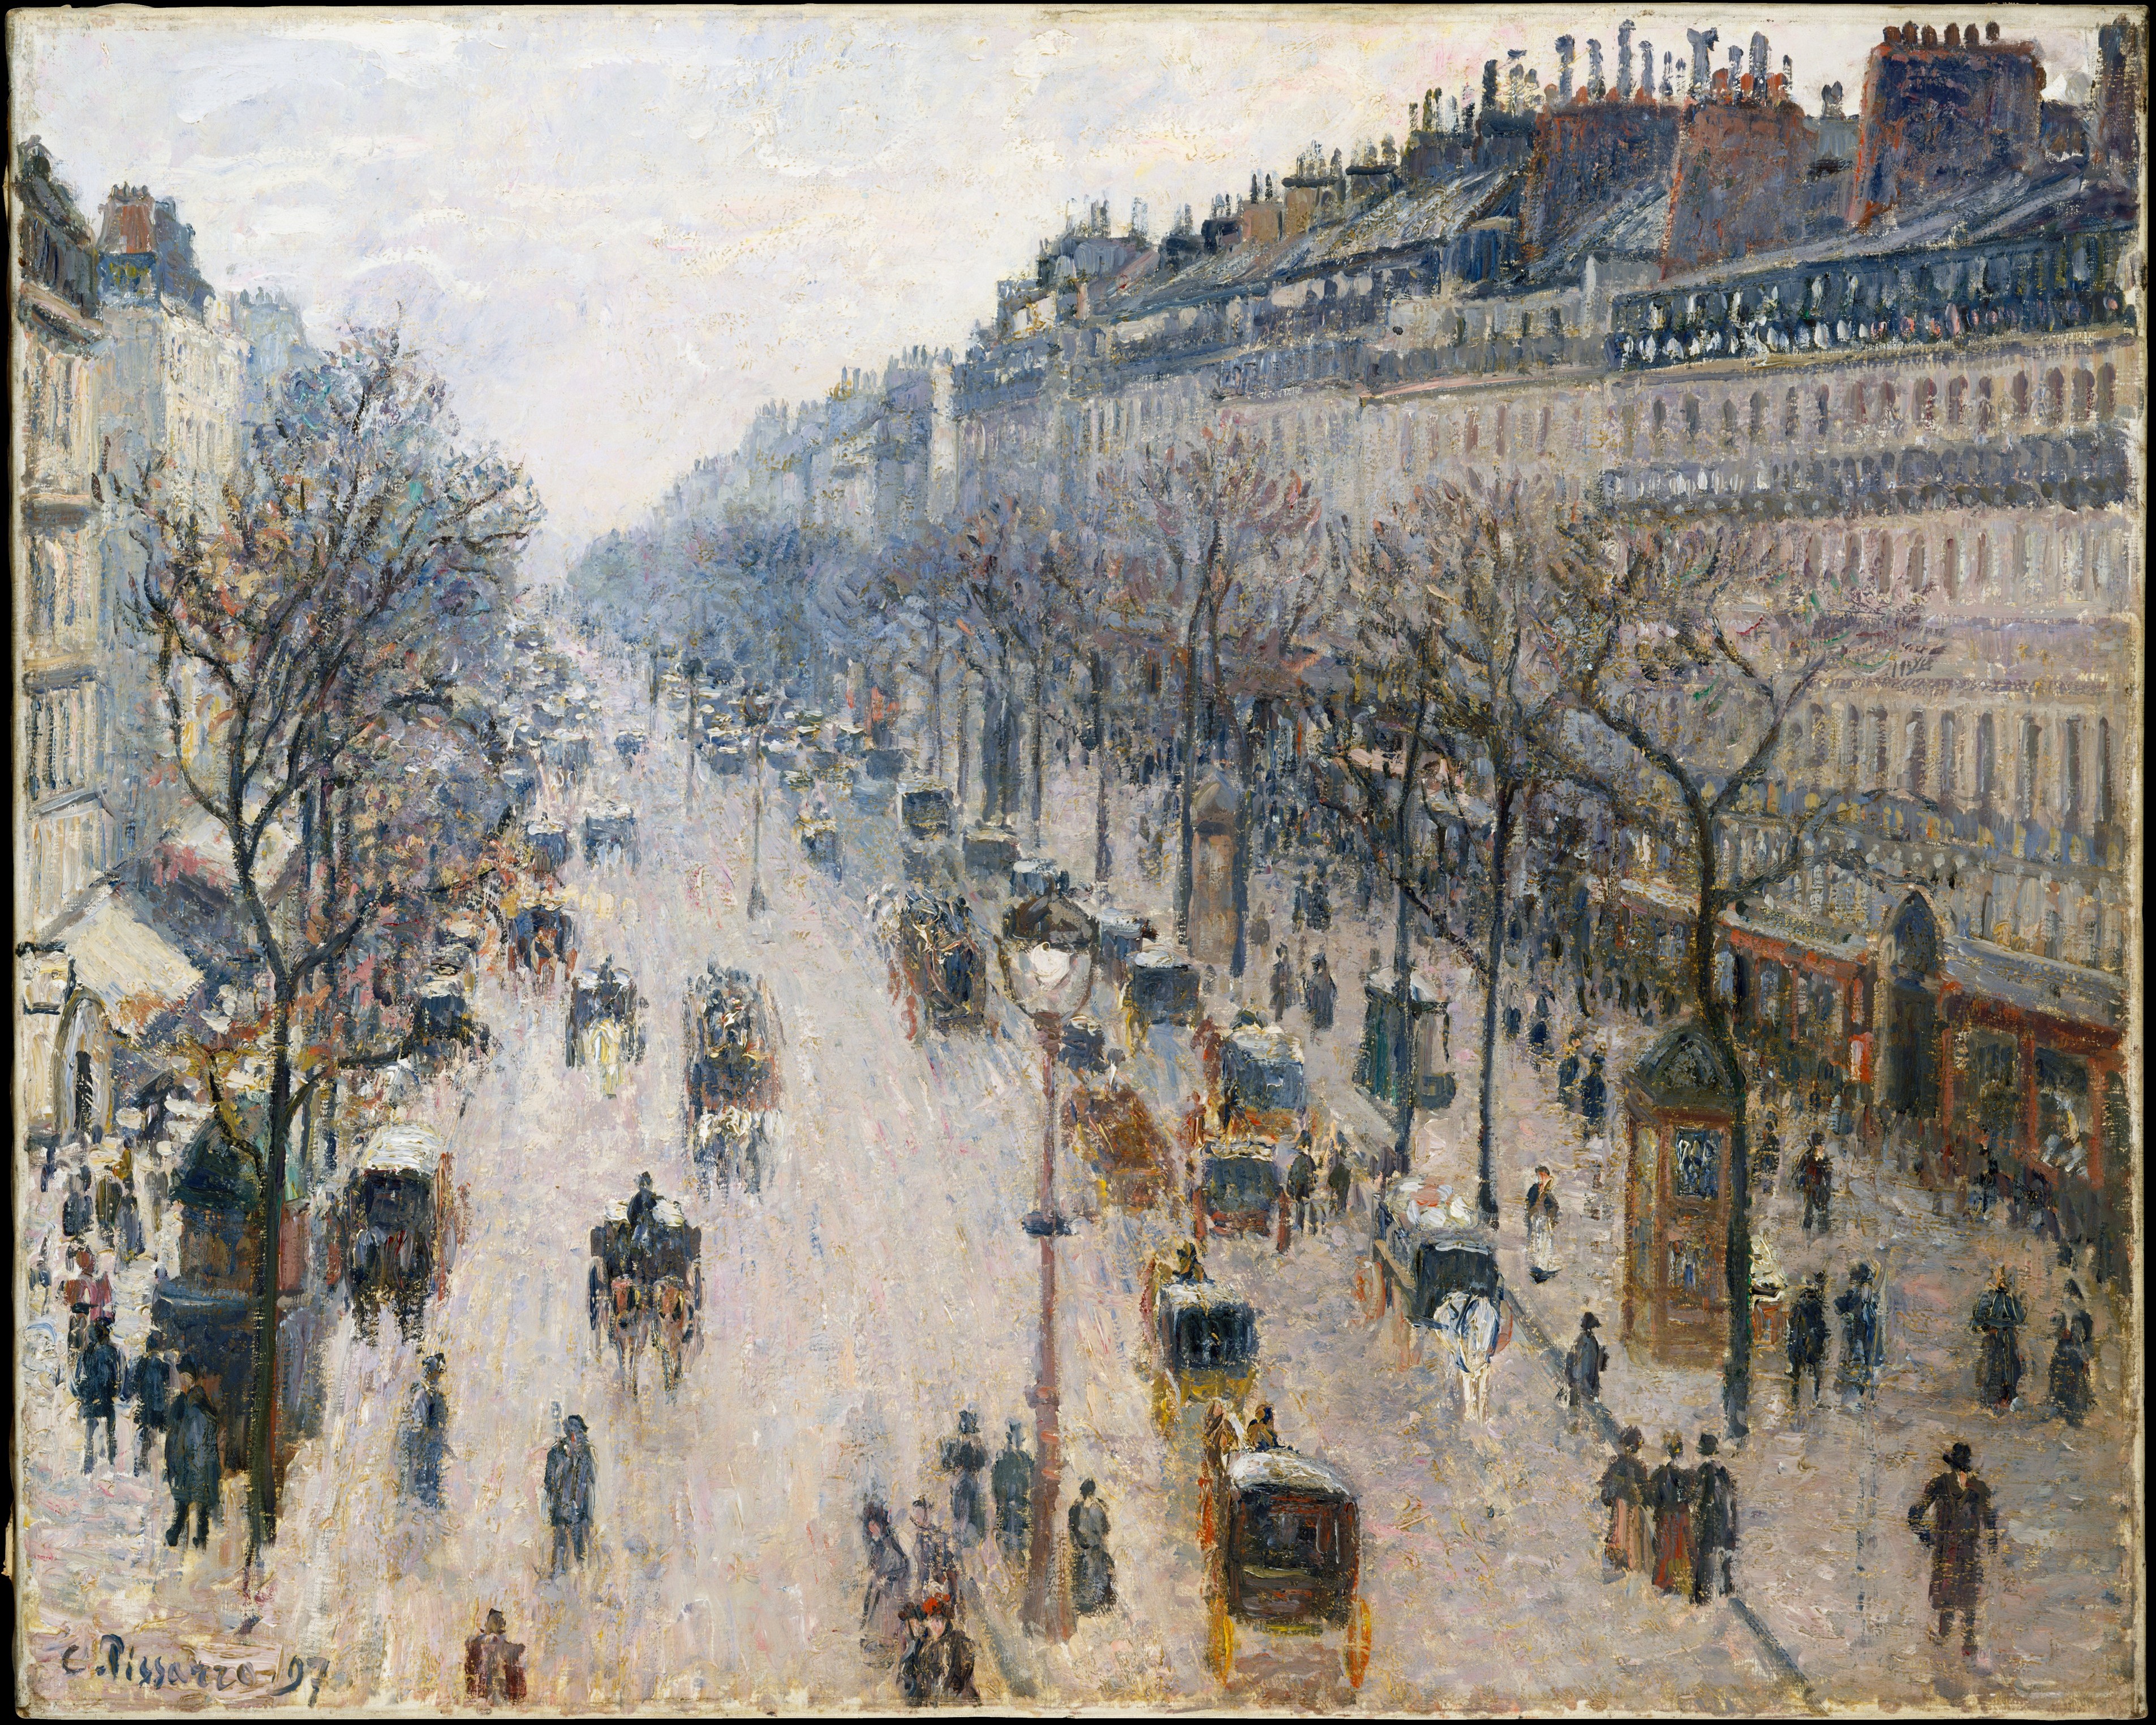 Der Boulevard Montmartre an einem Wintermorgen by Camille Pissarro - 1897 - 64.8 x 81.3 cm Metropolitan Museum of Art